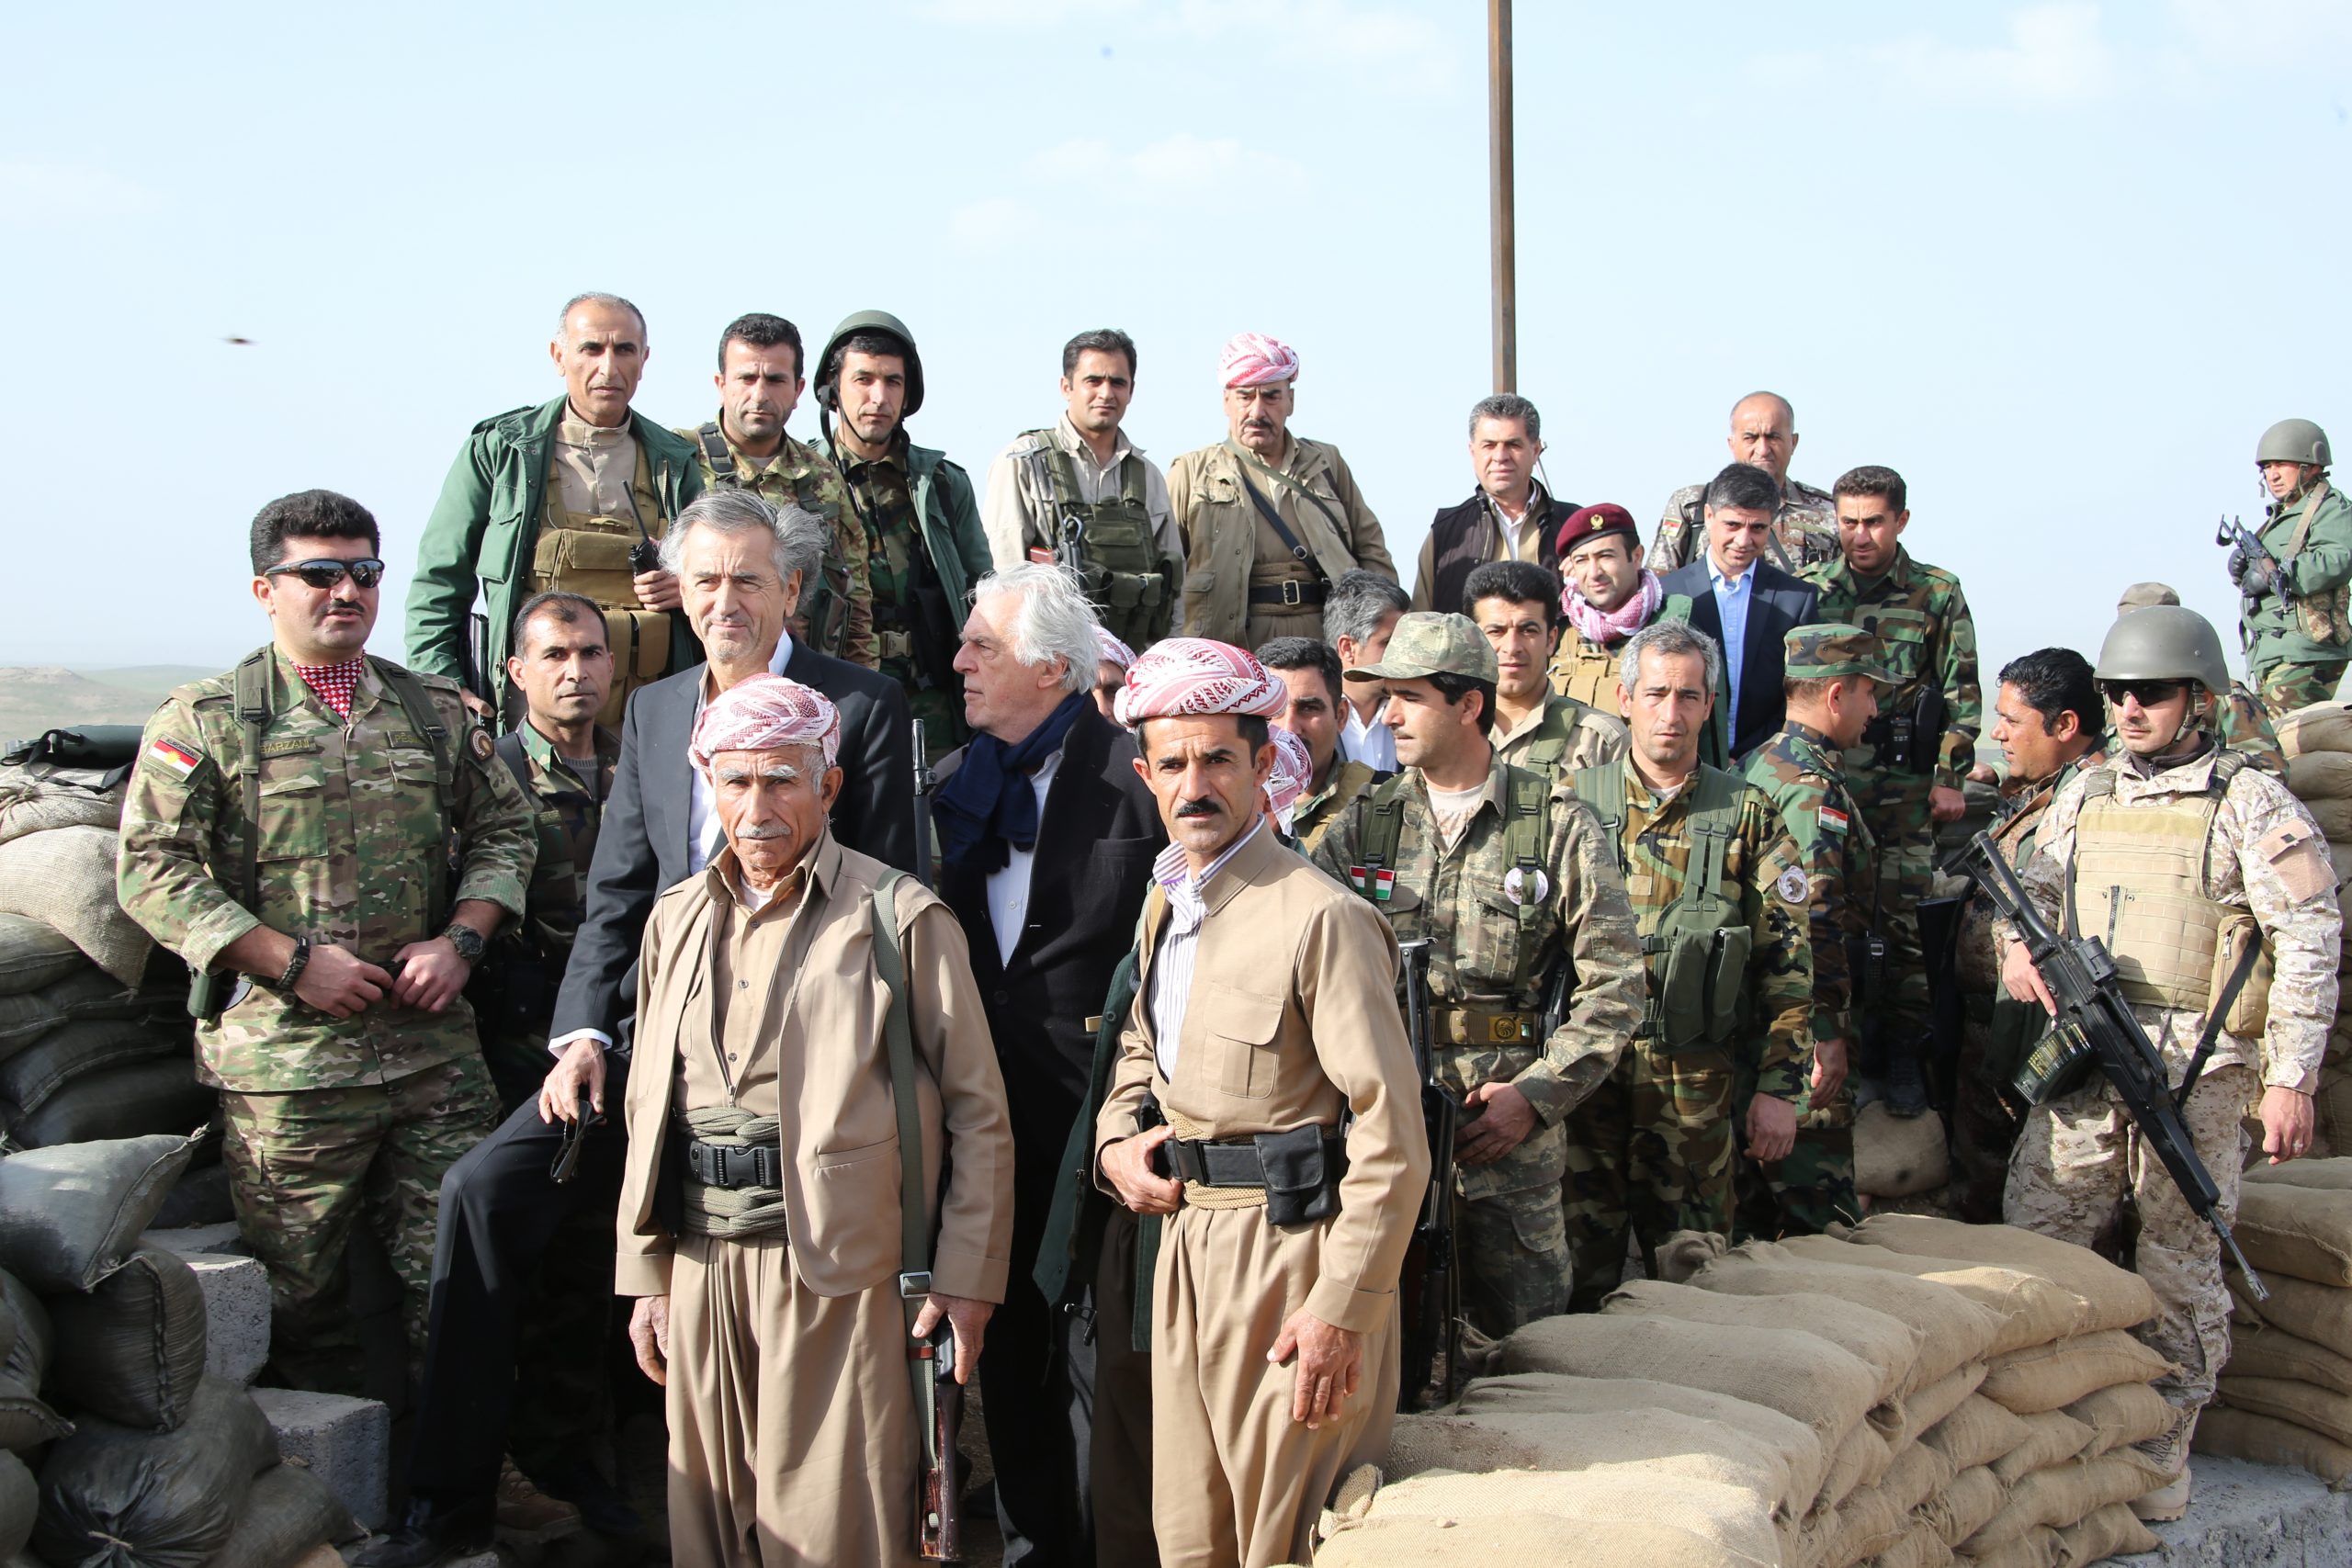 Bernard-Henri Lévy, Gilles Hertzog, et le général Barzani avec ses hommes en tenue militaire.